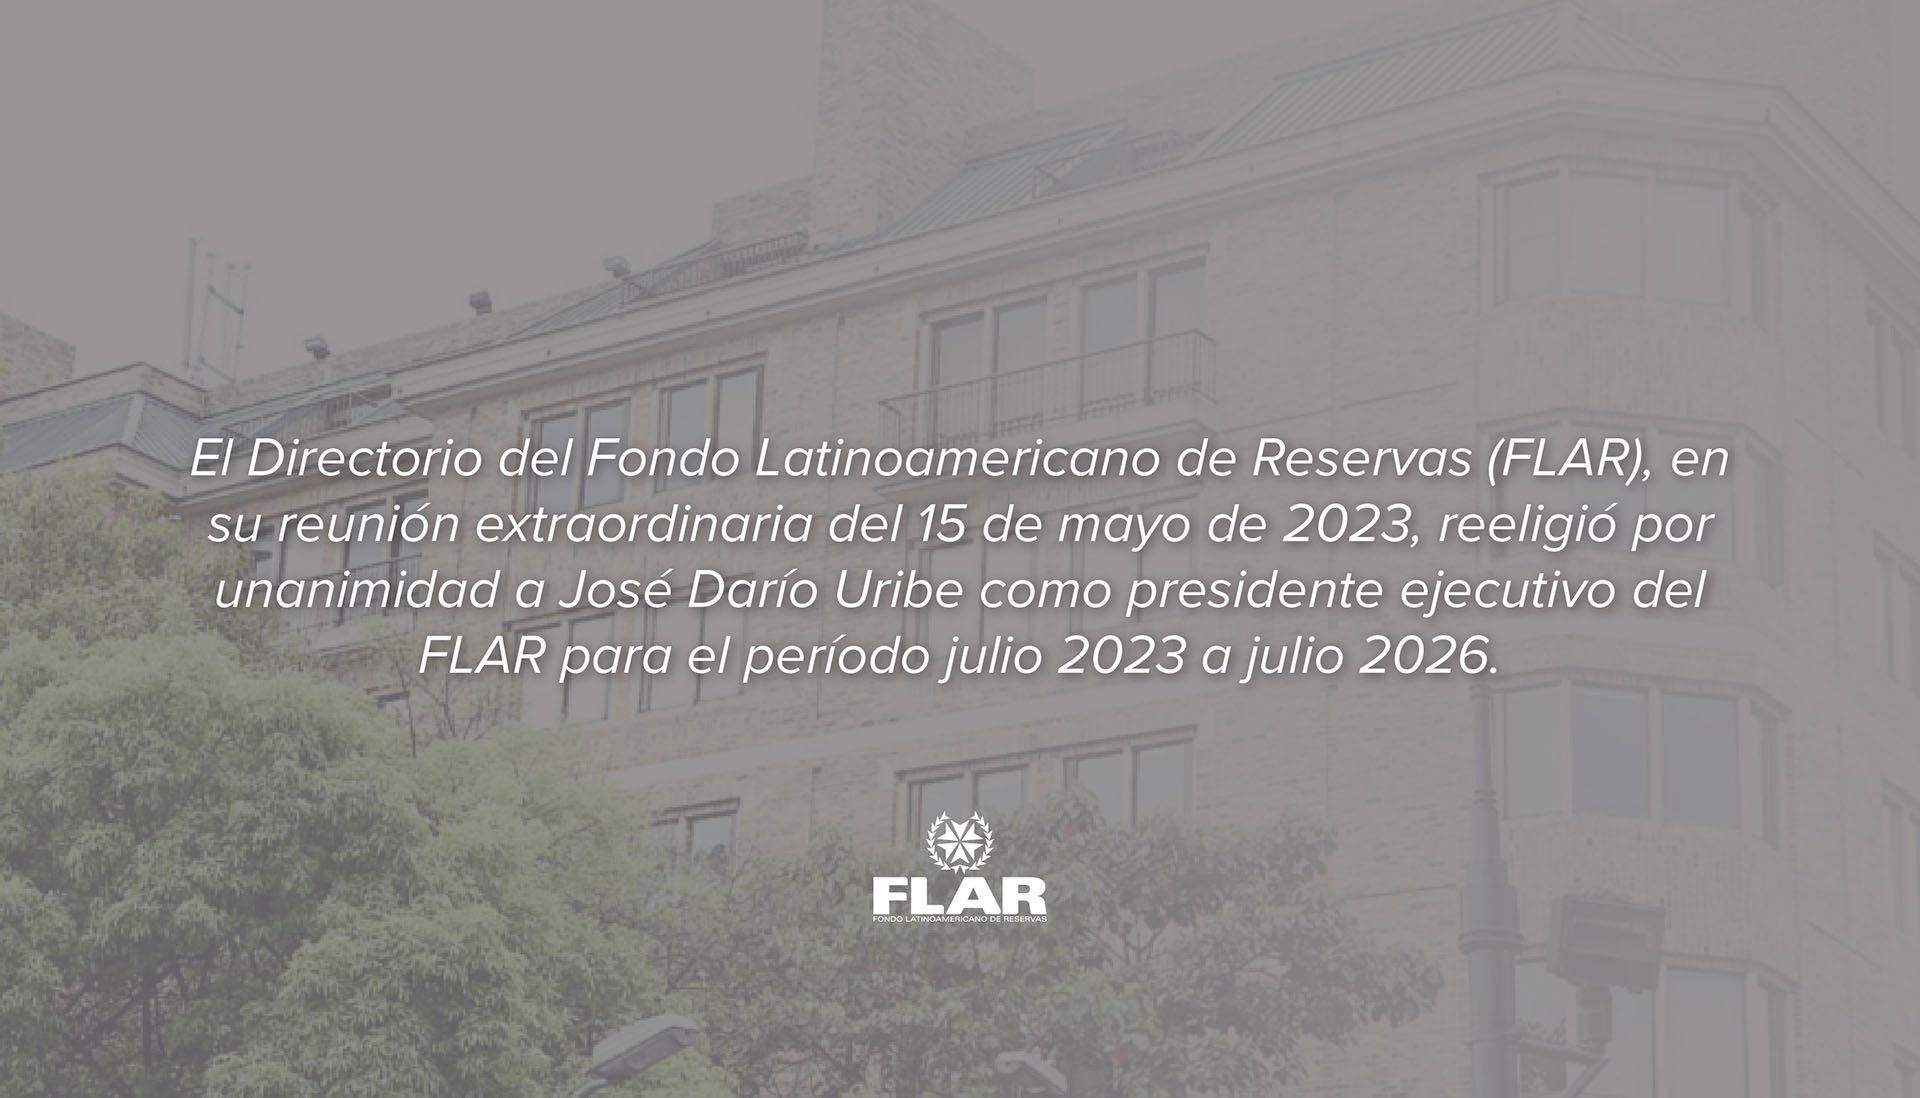 El Directorio del Fondo Latinoamericano de Reservas (FLAR), en su reunión extraordinaria del 15 de mayo de 2023, reeligió por unanimidad a José Darío Uribe como presidente ejecutivo del FLAR para el período julio 2023 a julio 2026.